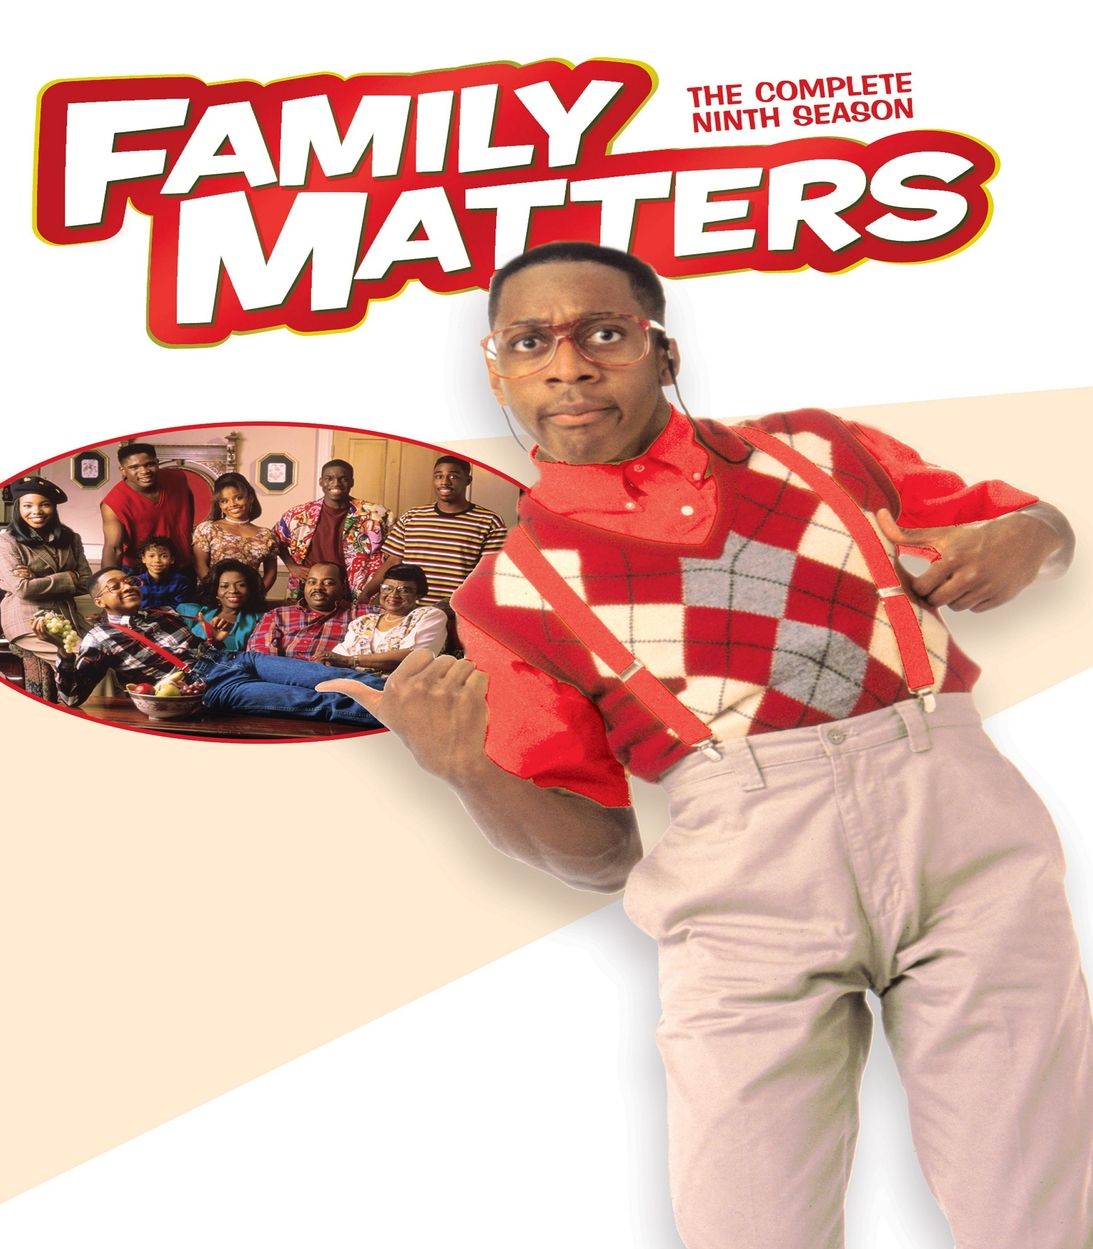 Steve Urkel poses on Family Matters Season 9 Poster